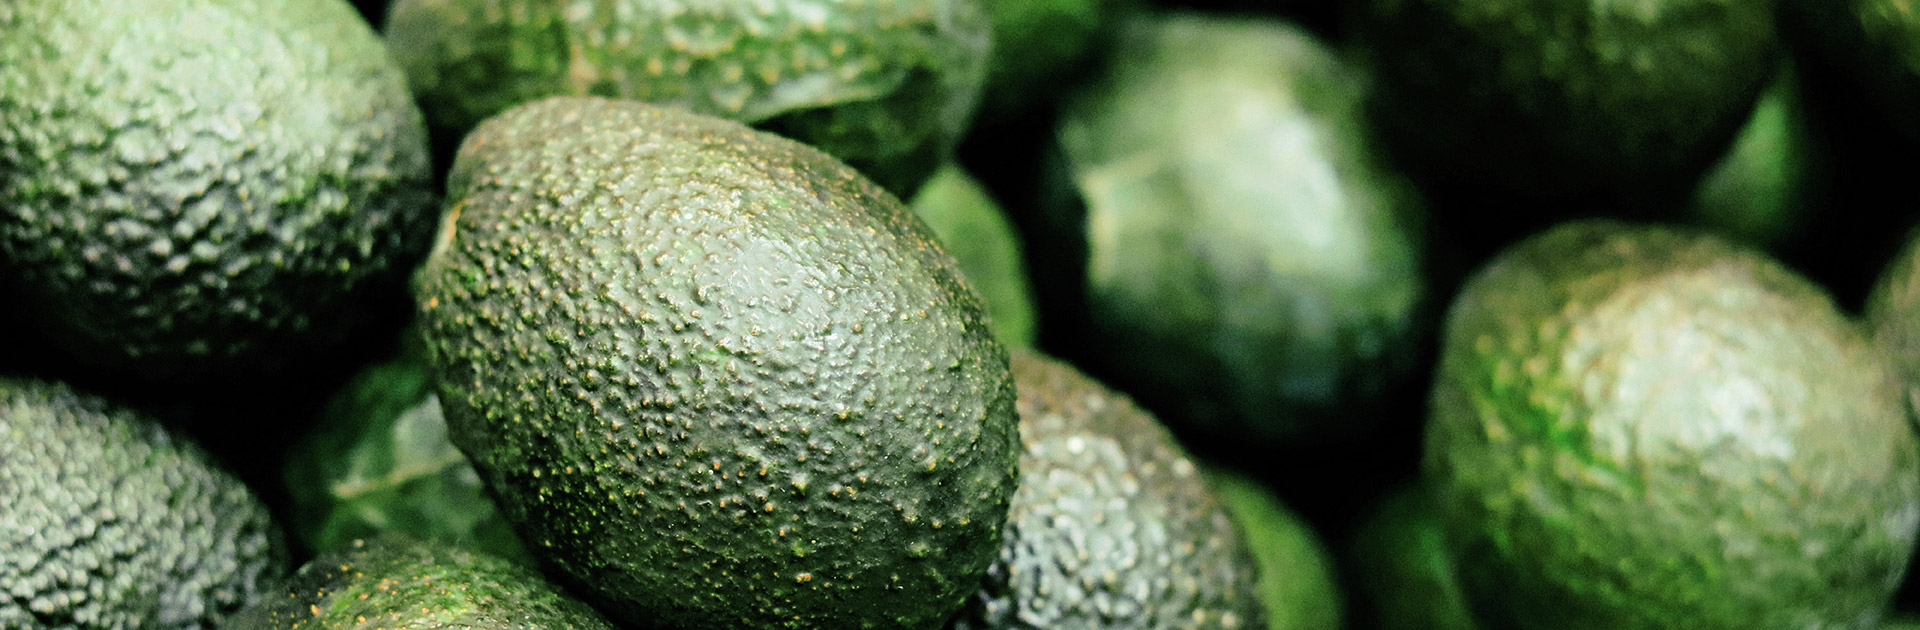 avocado-oel-stage-2.jpg